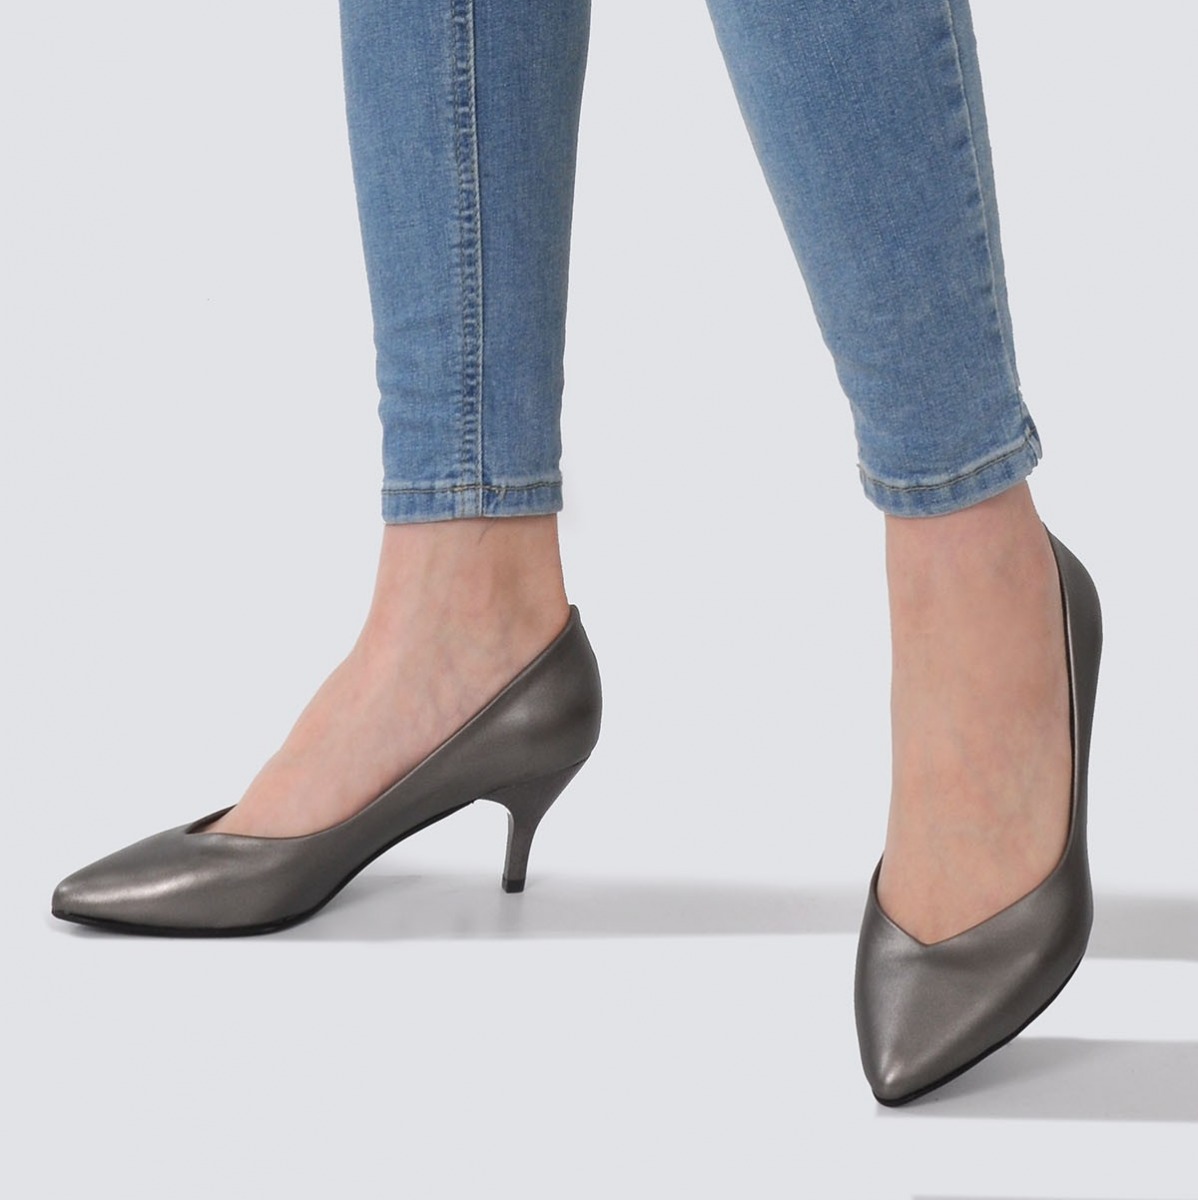 Flo Kadın Platin Klasik Topuklu Ayakkabı VZN21-001Y. 3